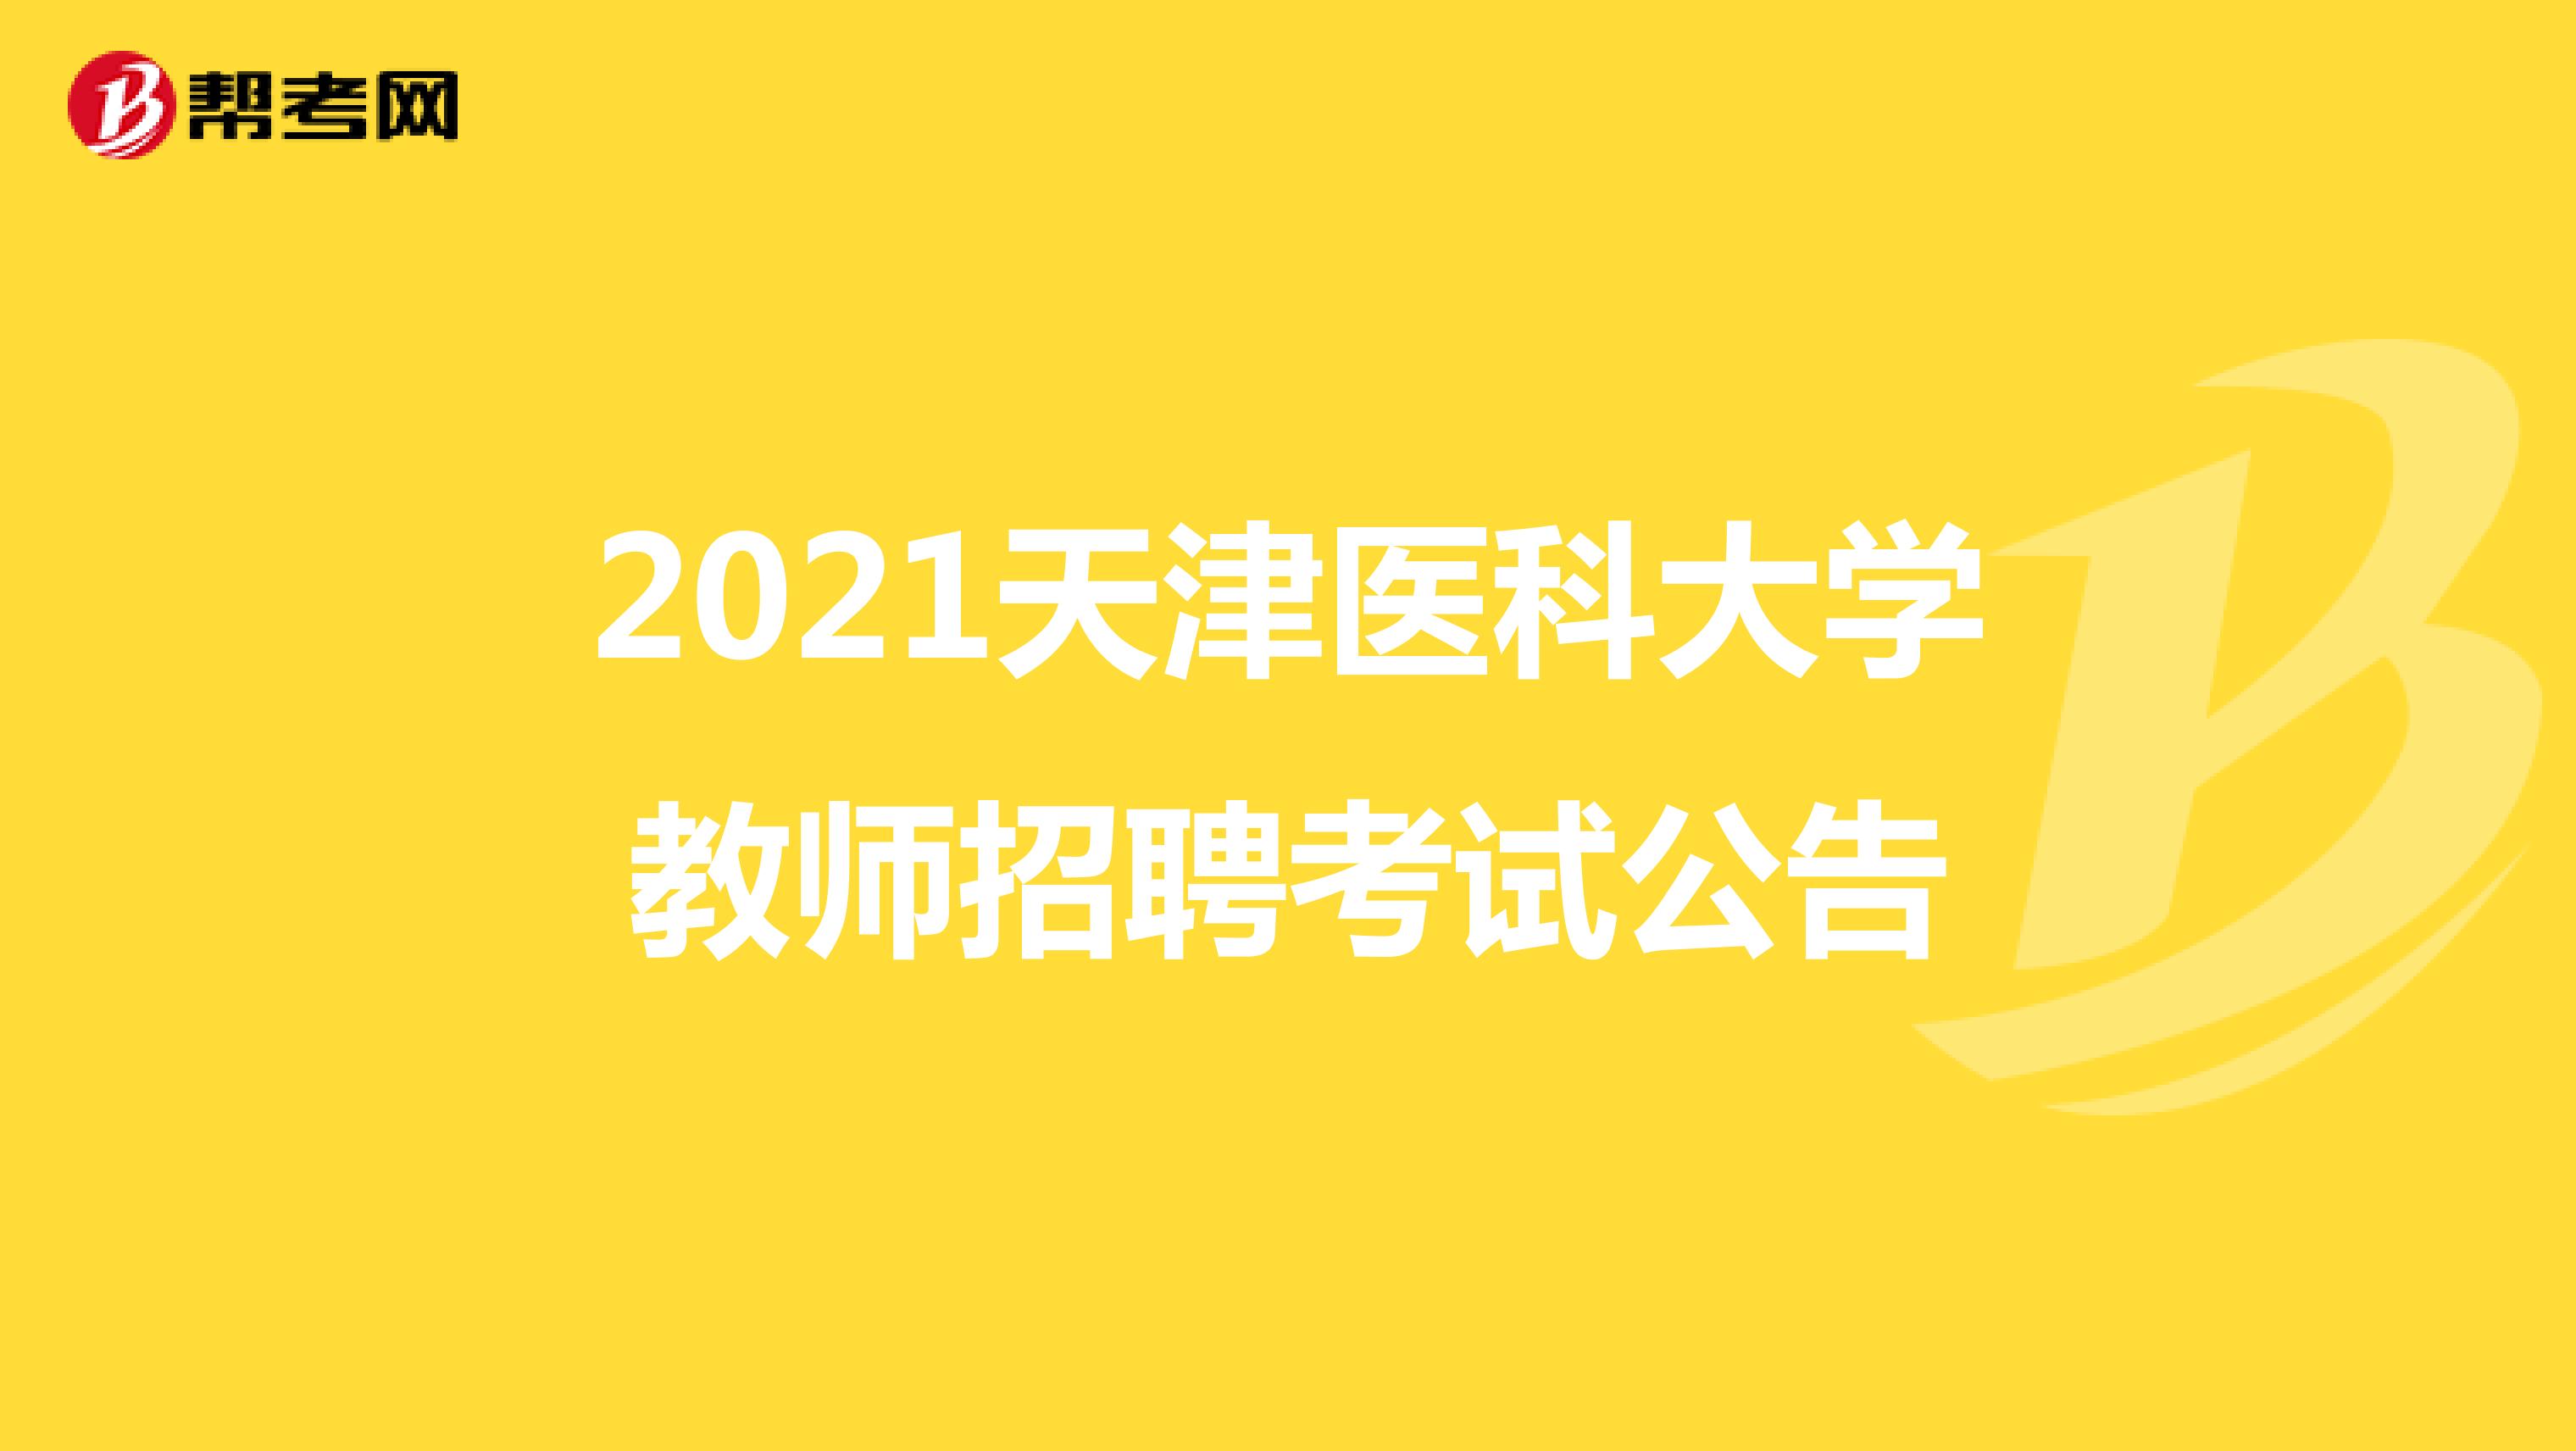 2021天津医科大学教师招聘考试公告